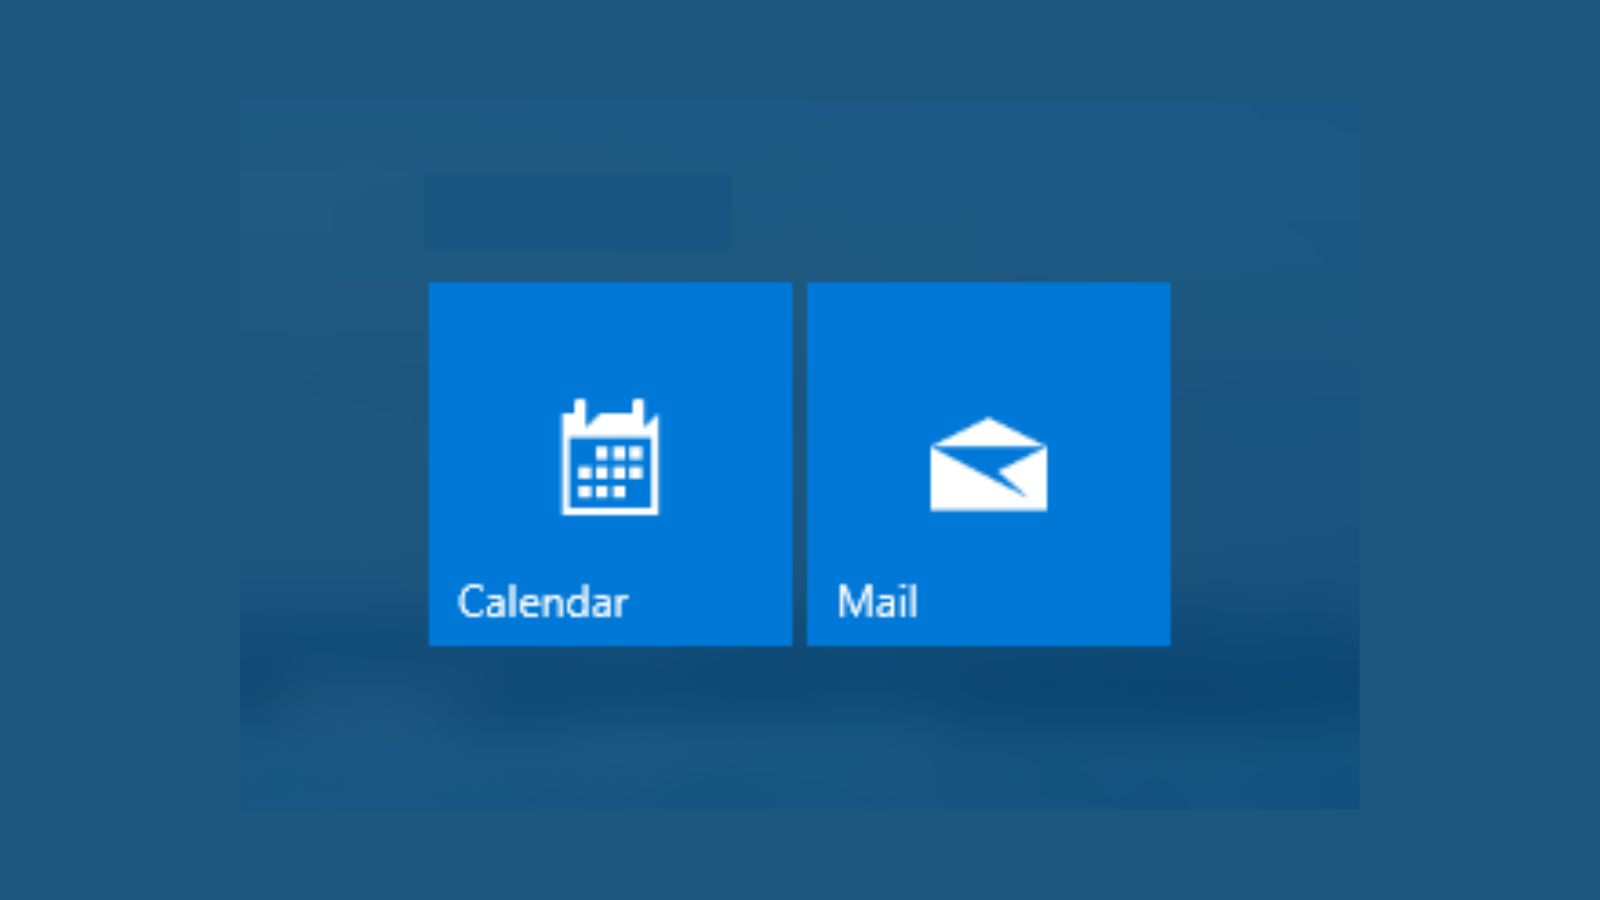 仍在使用 Windows Mail 和日历应用而不是新版 Outlook？微软让切换回来变得困难 | 科技新闻